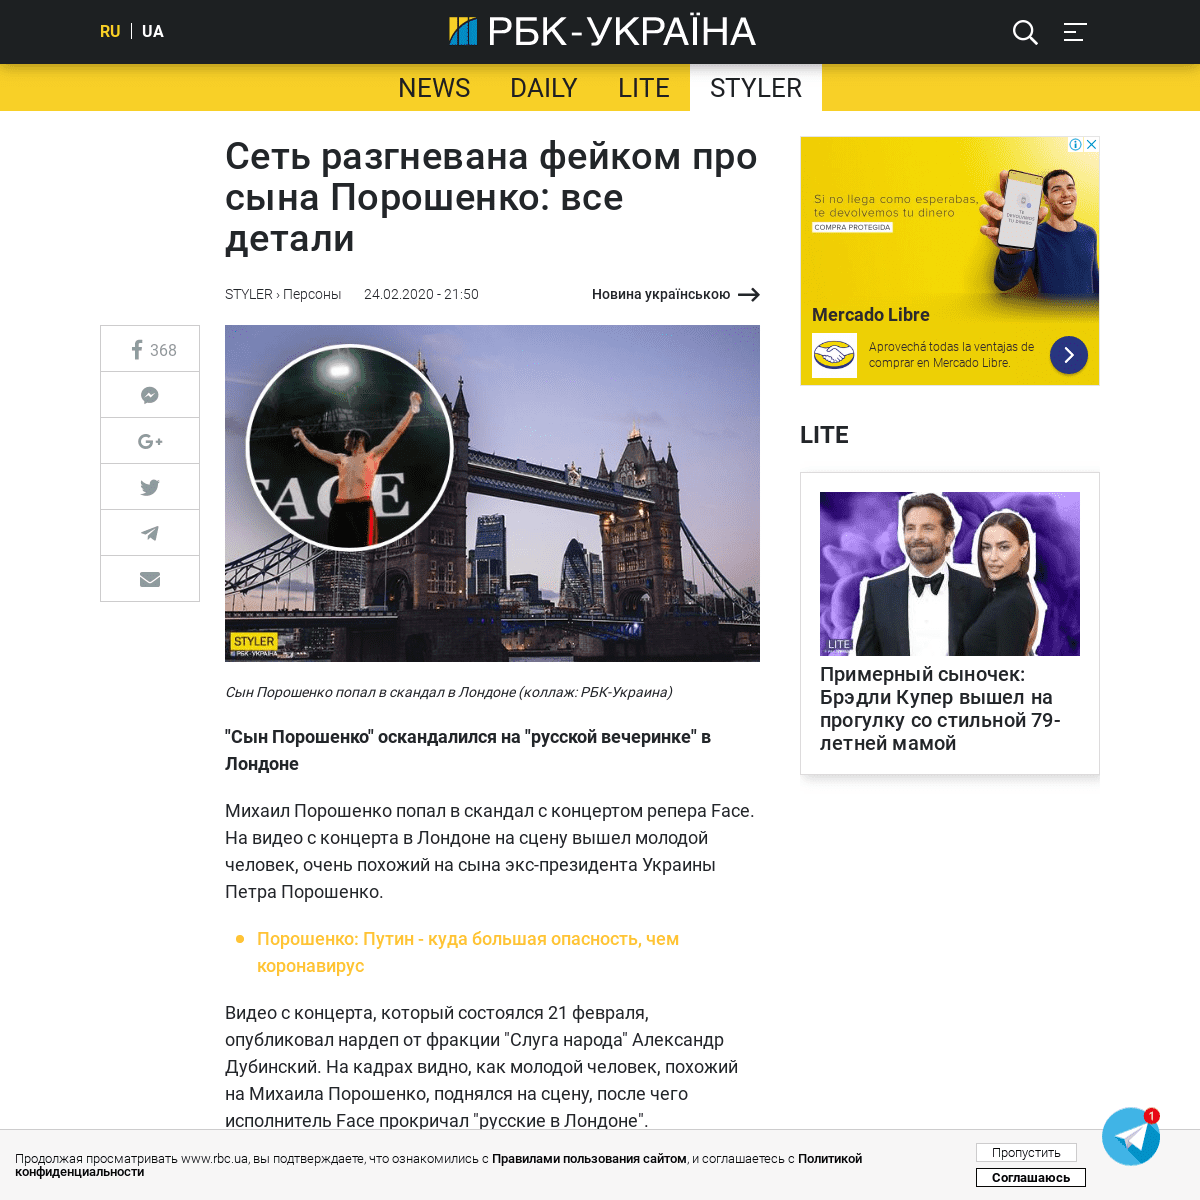 A complete backup of www.rbc.ua/rus/styler/set-razgnevana-feykom-syna-poroshenko-detali-1582570595.html